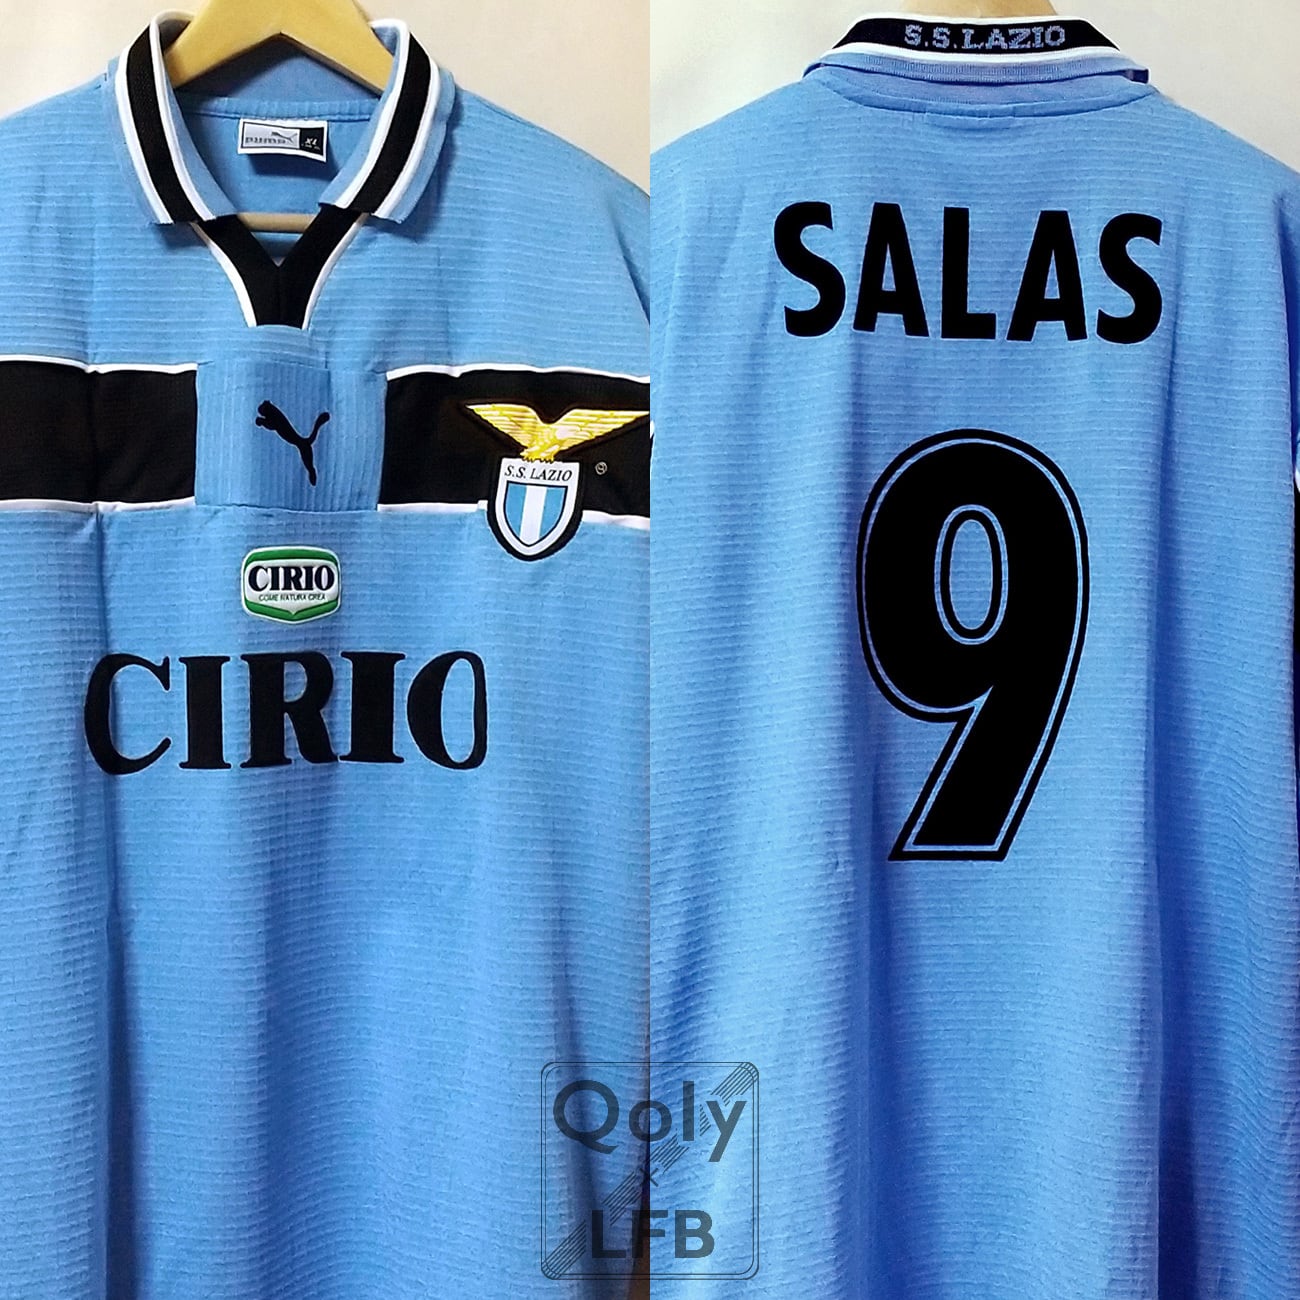 ラツィオ 1998-2000 Puma ホーム長袖 ユニフォーム #9 SALAS マルセロ ...